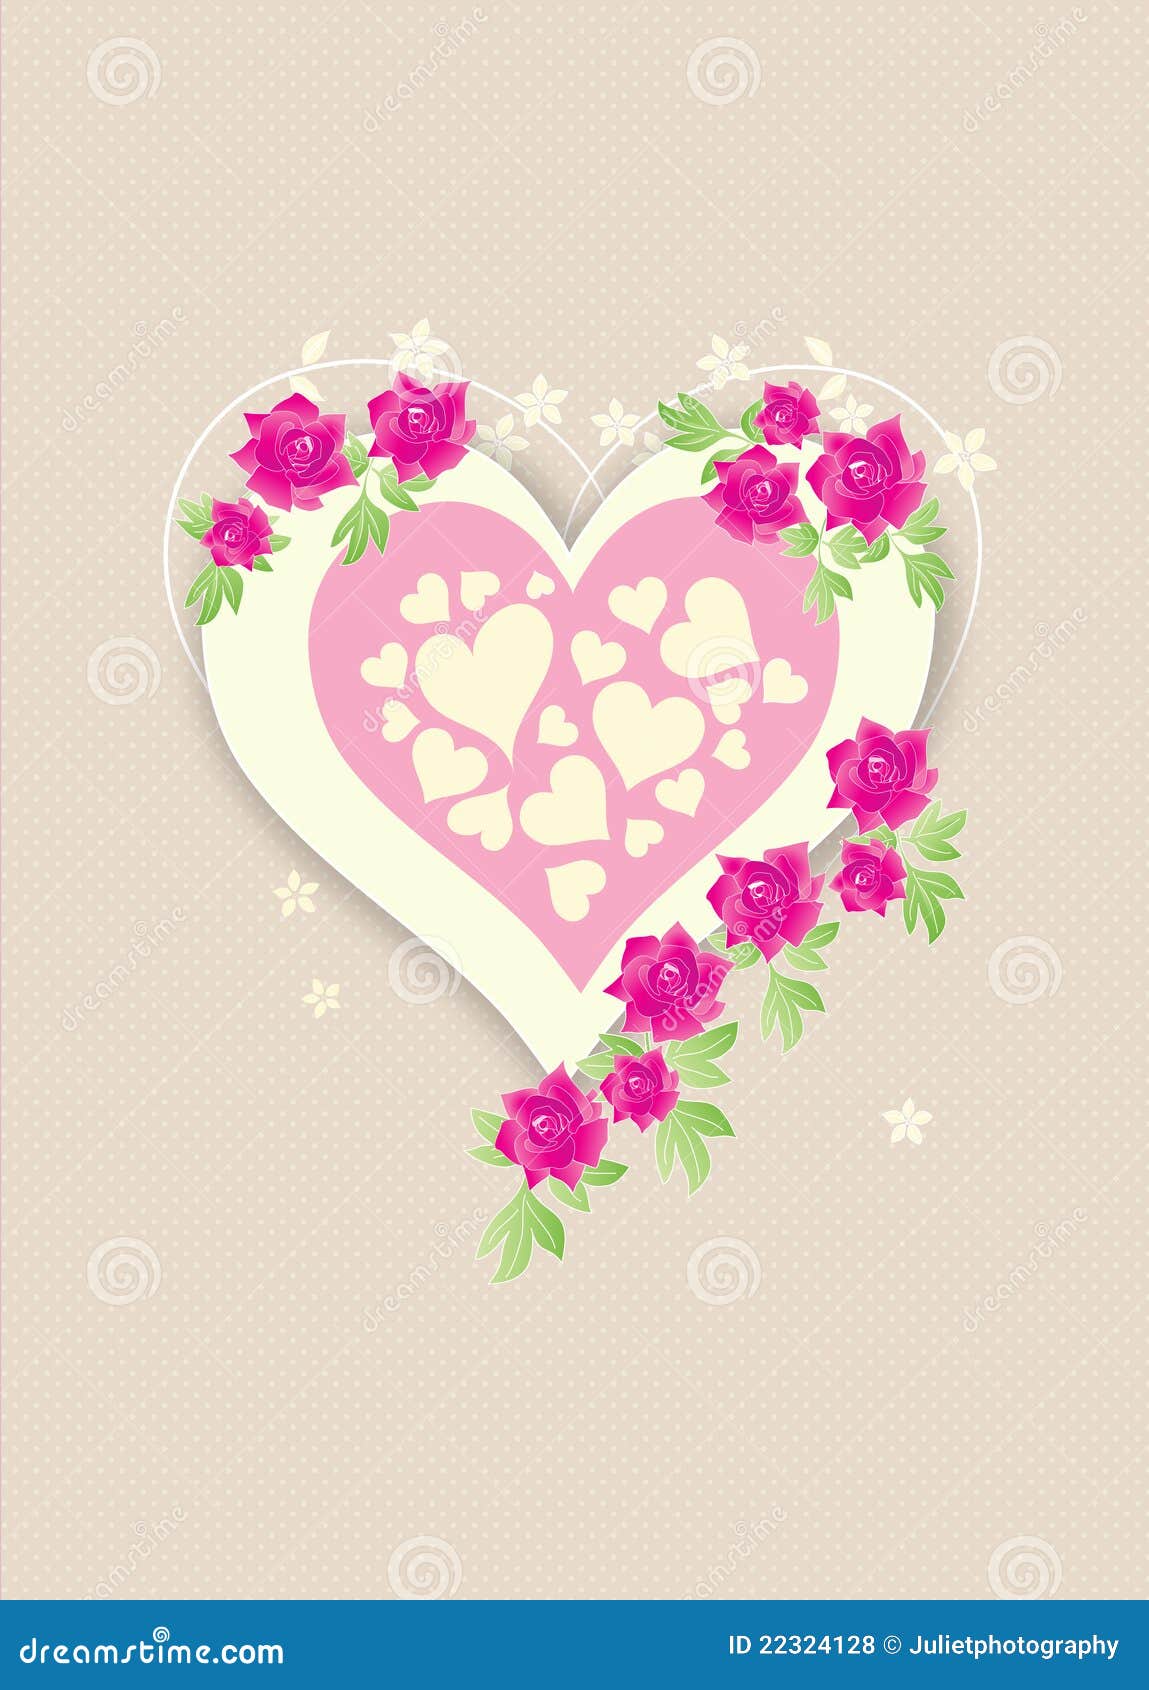 Rose Love Heart